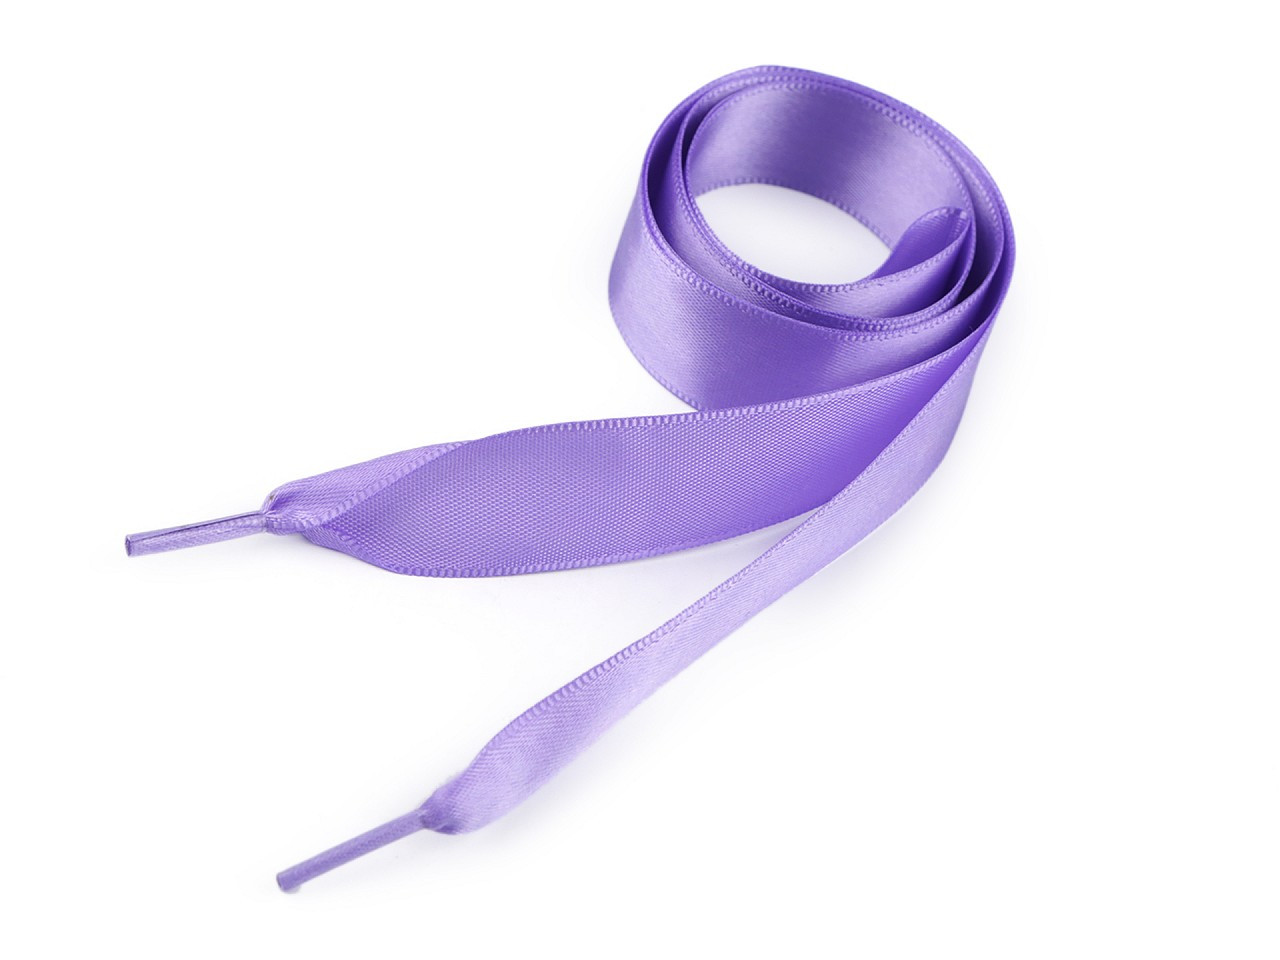 Saténové tkaničky do bot, tenisek a mikin délka 110 cm, barva 18 fialová lila